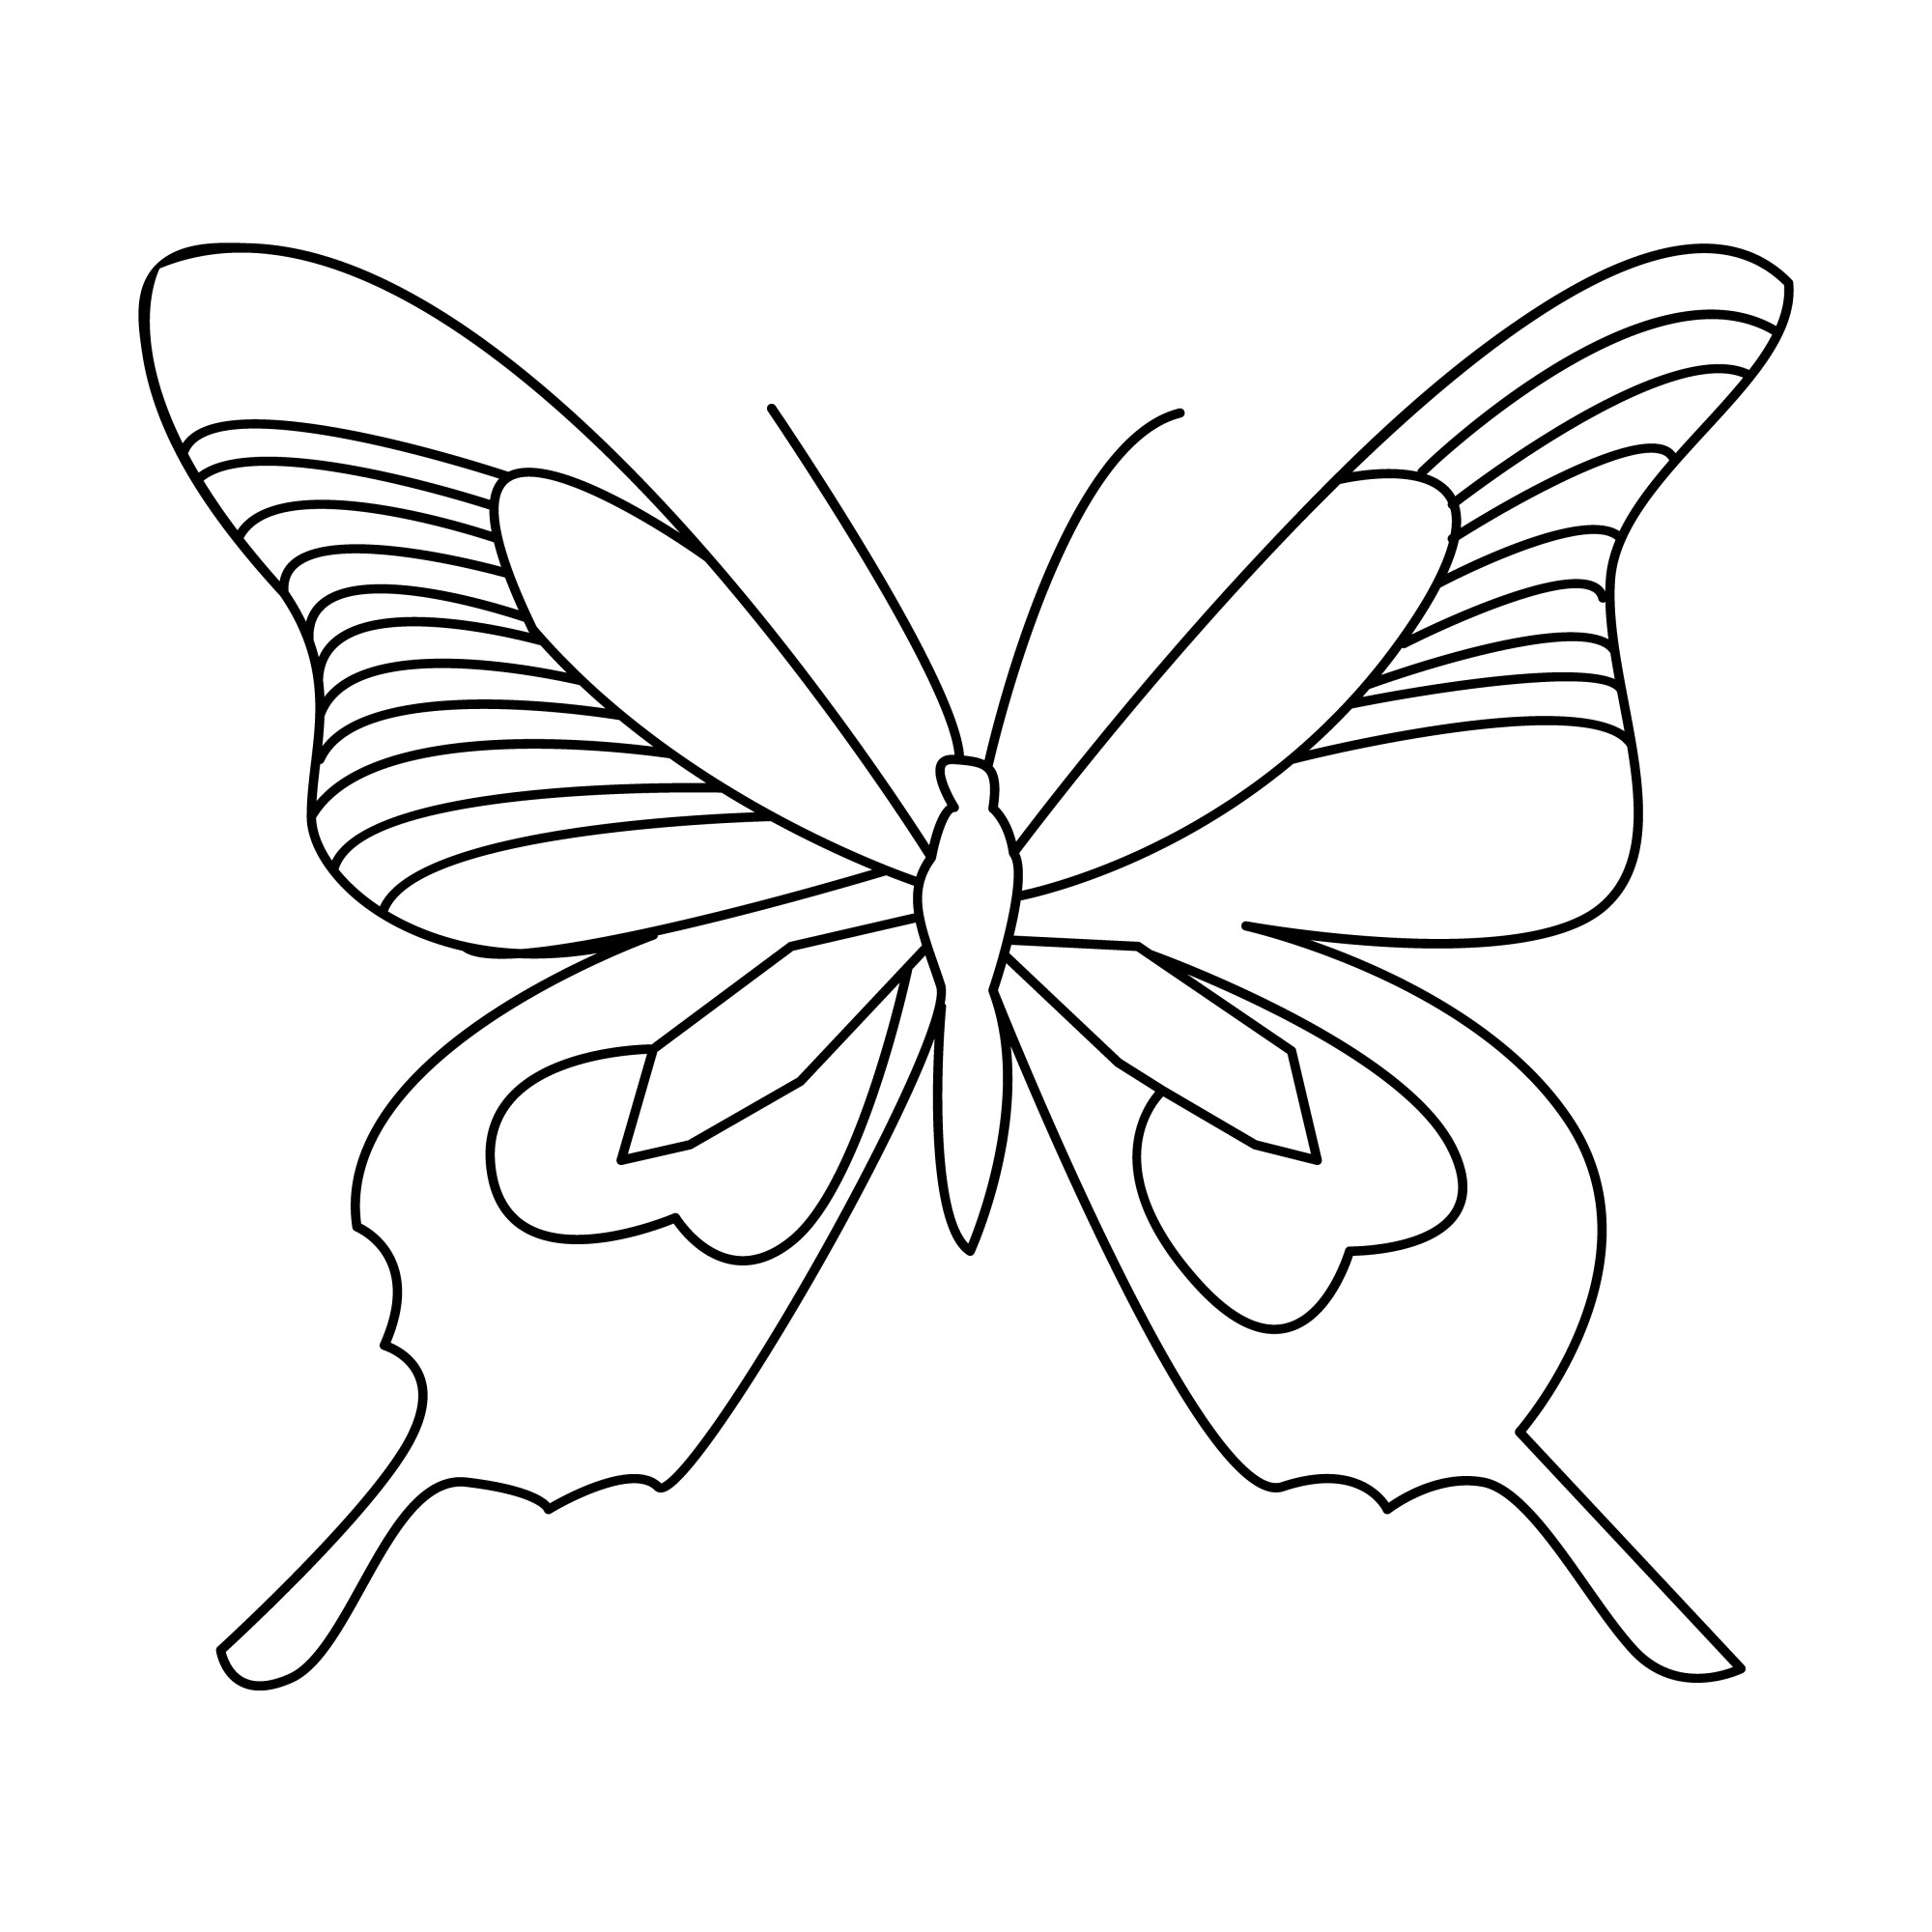 Раскраска для детей: отличная бабочка